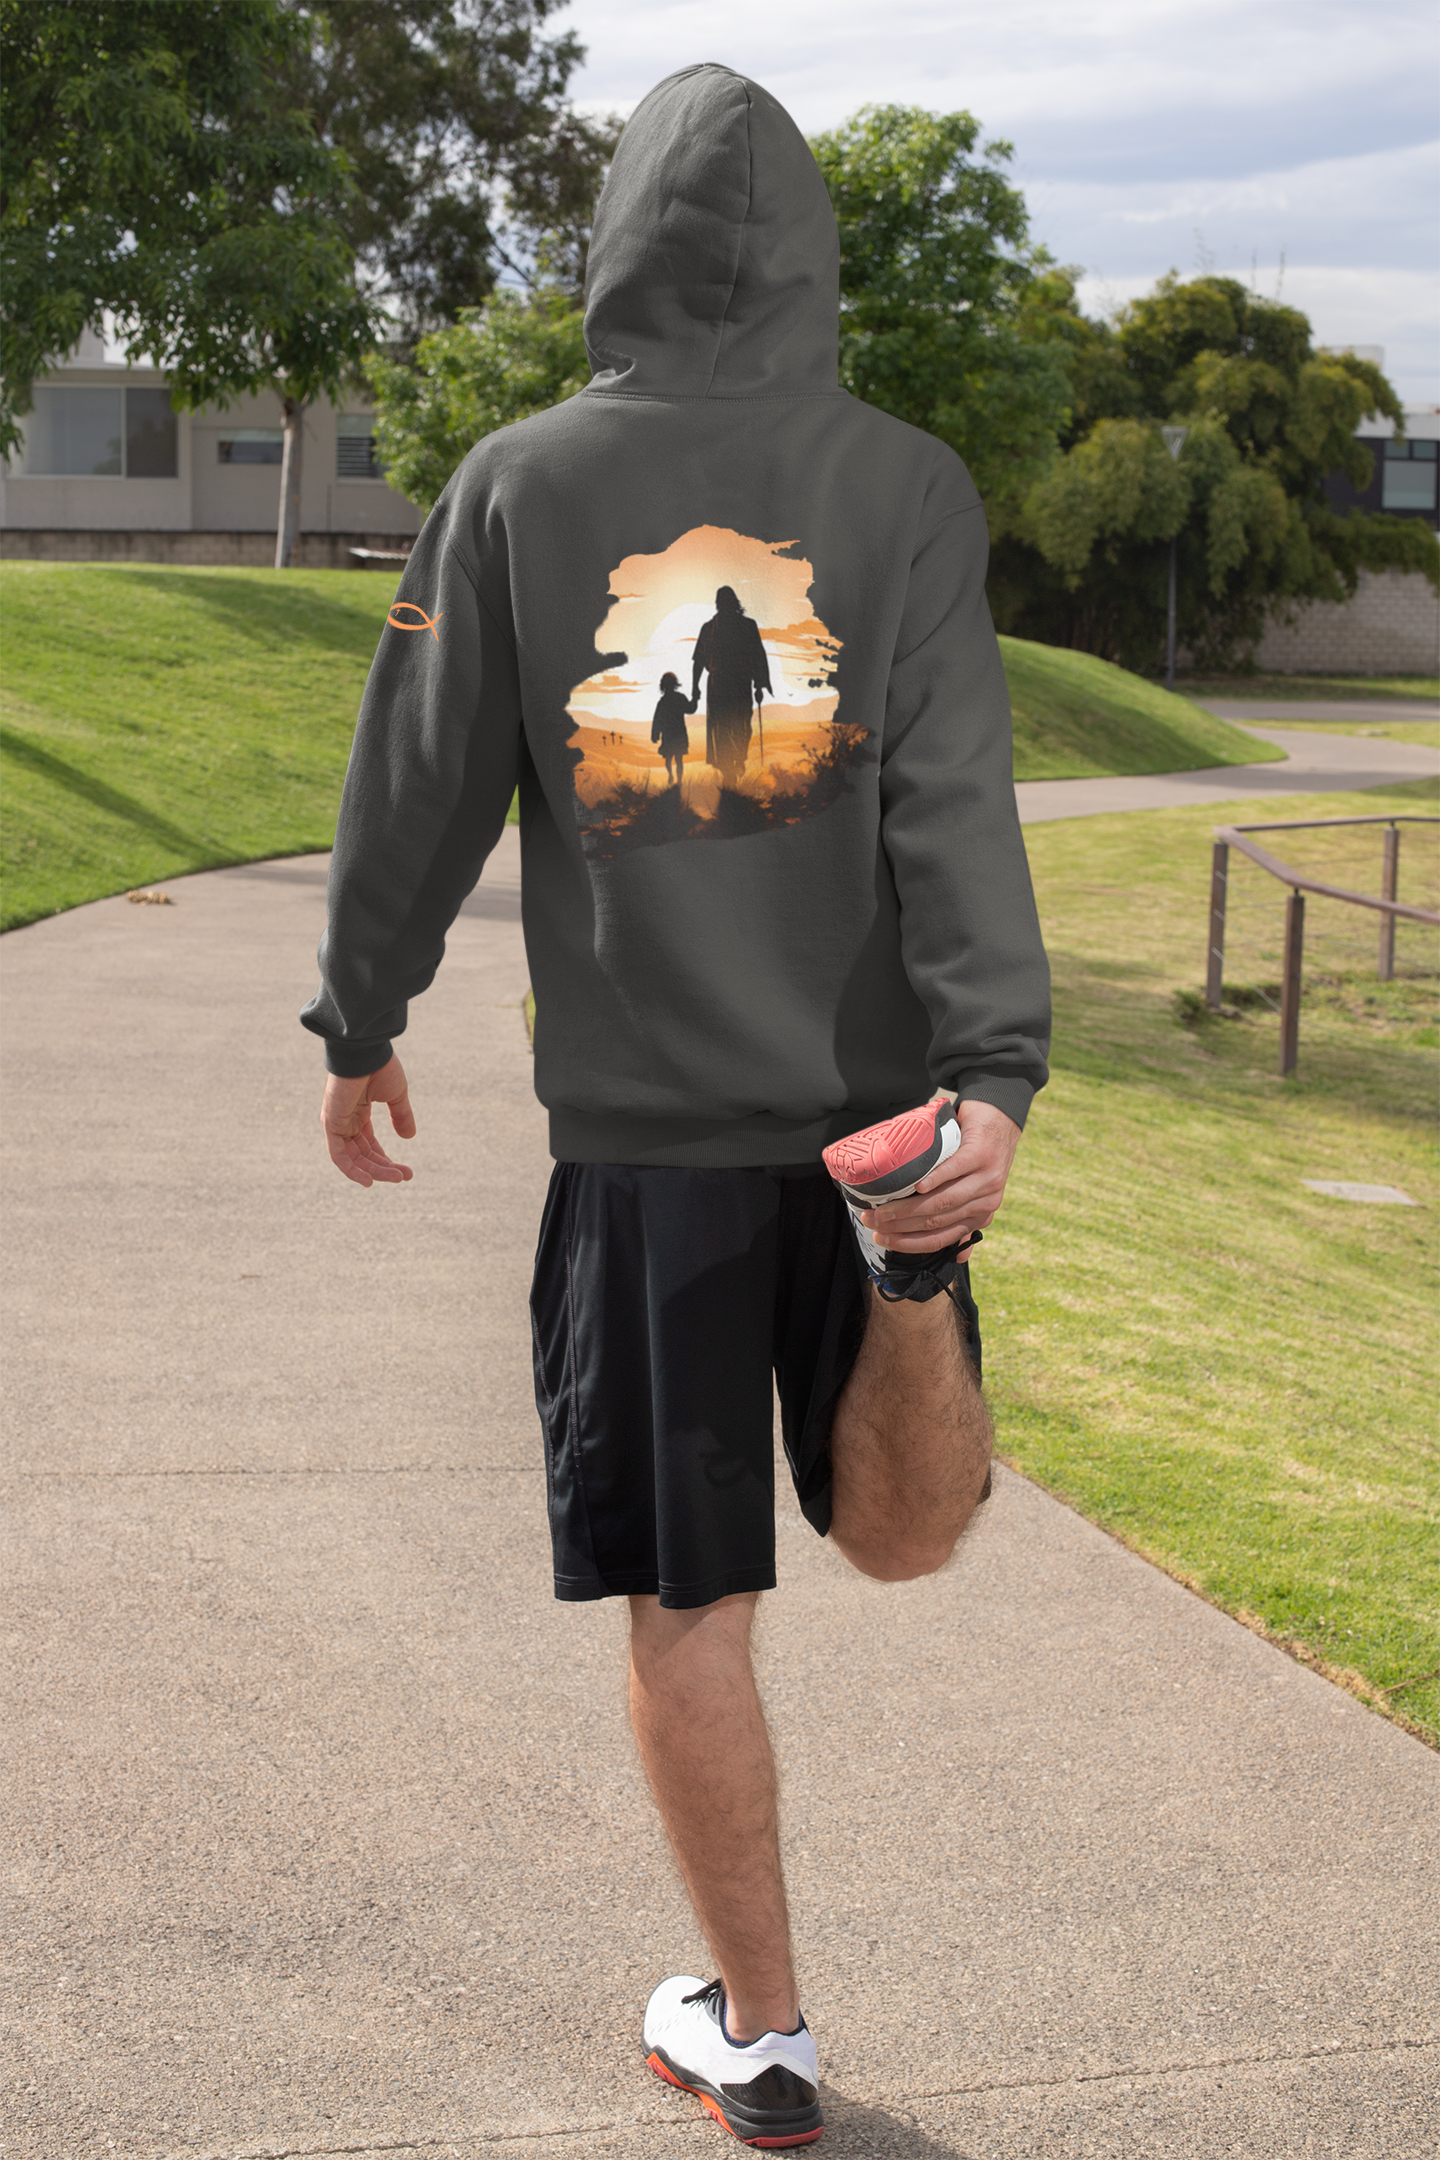 Christian Hooded Sweatshirt - Jesus The Good Shepherd - Unisex